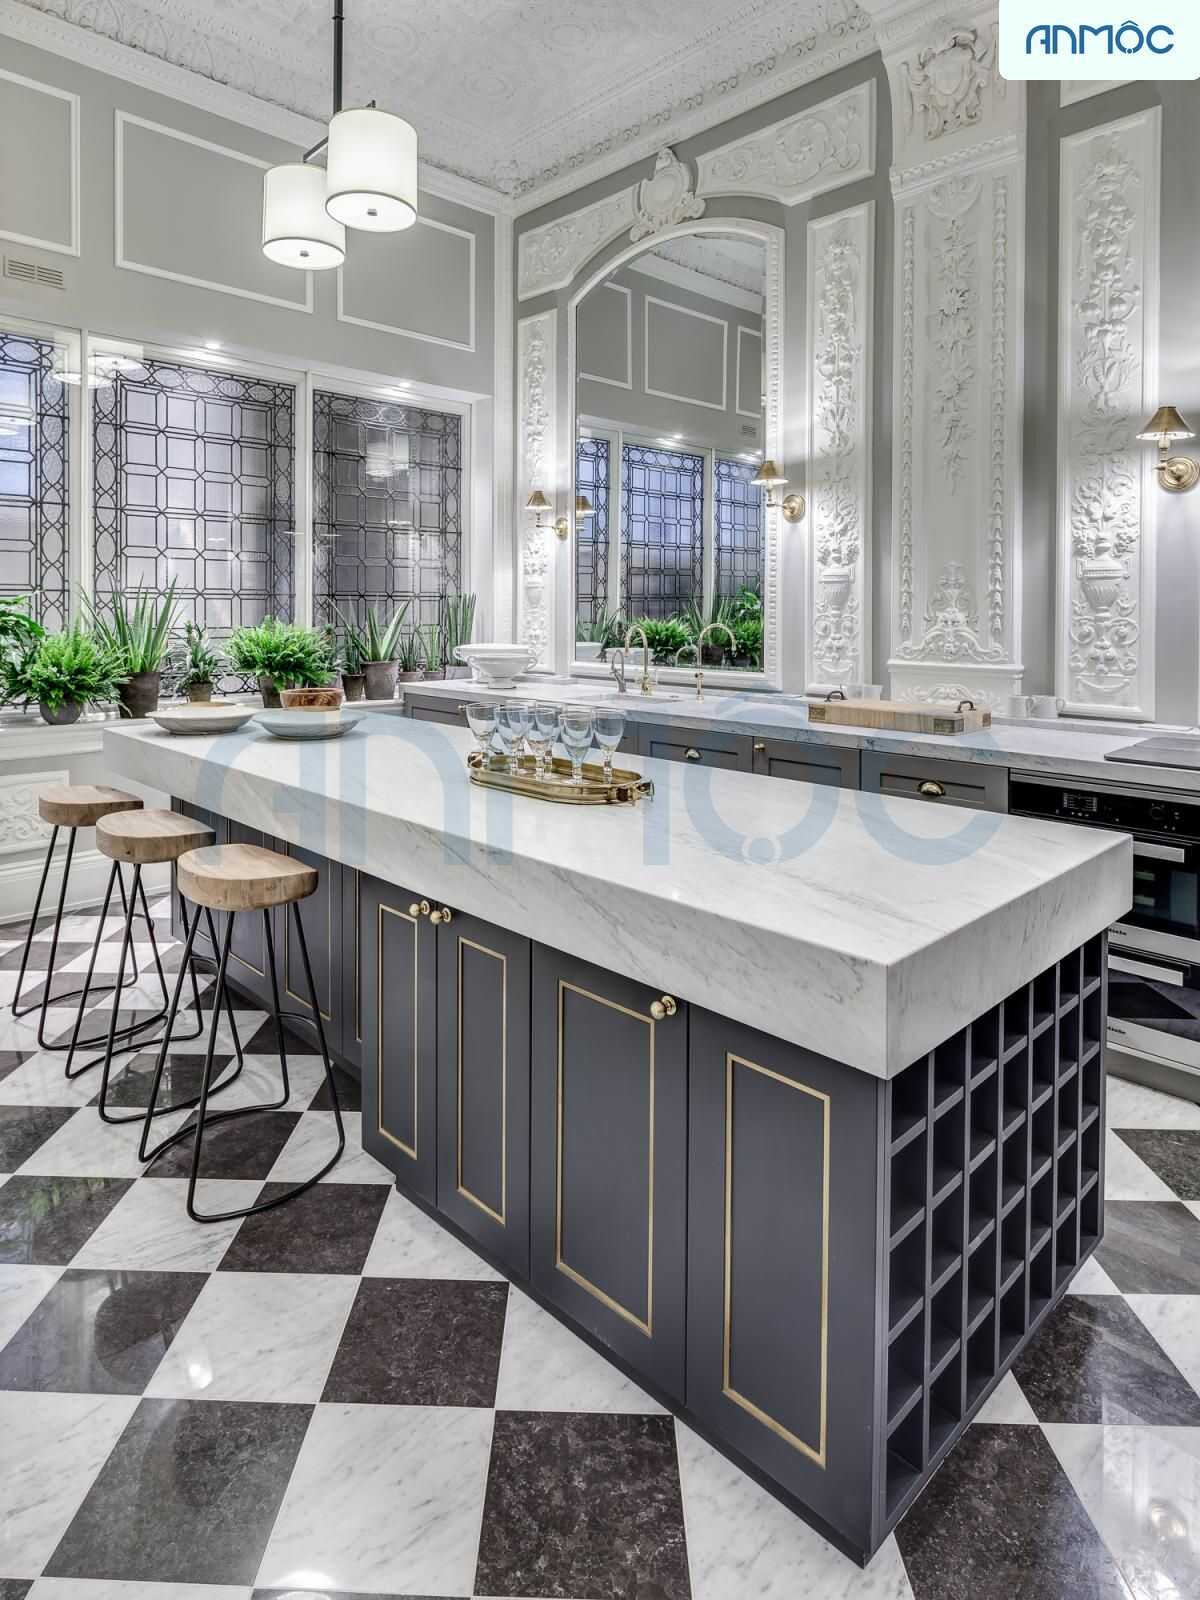 Không gian nội thất bếp được thiết kế phong cách tân cổ điển màu sắc trung tính